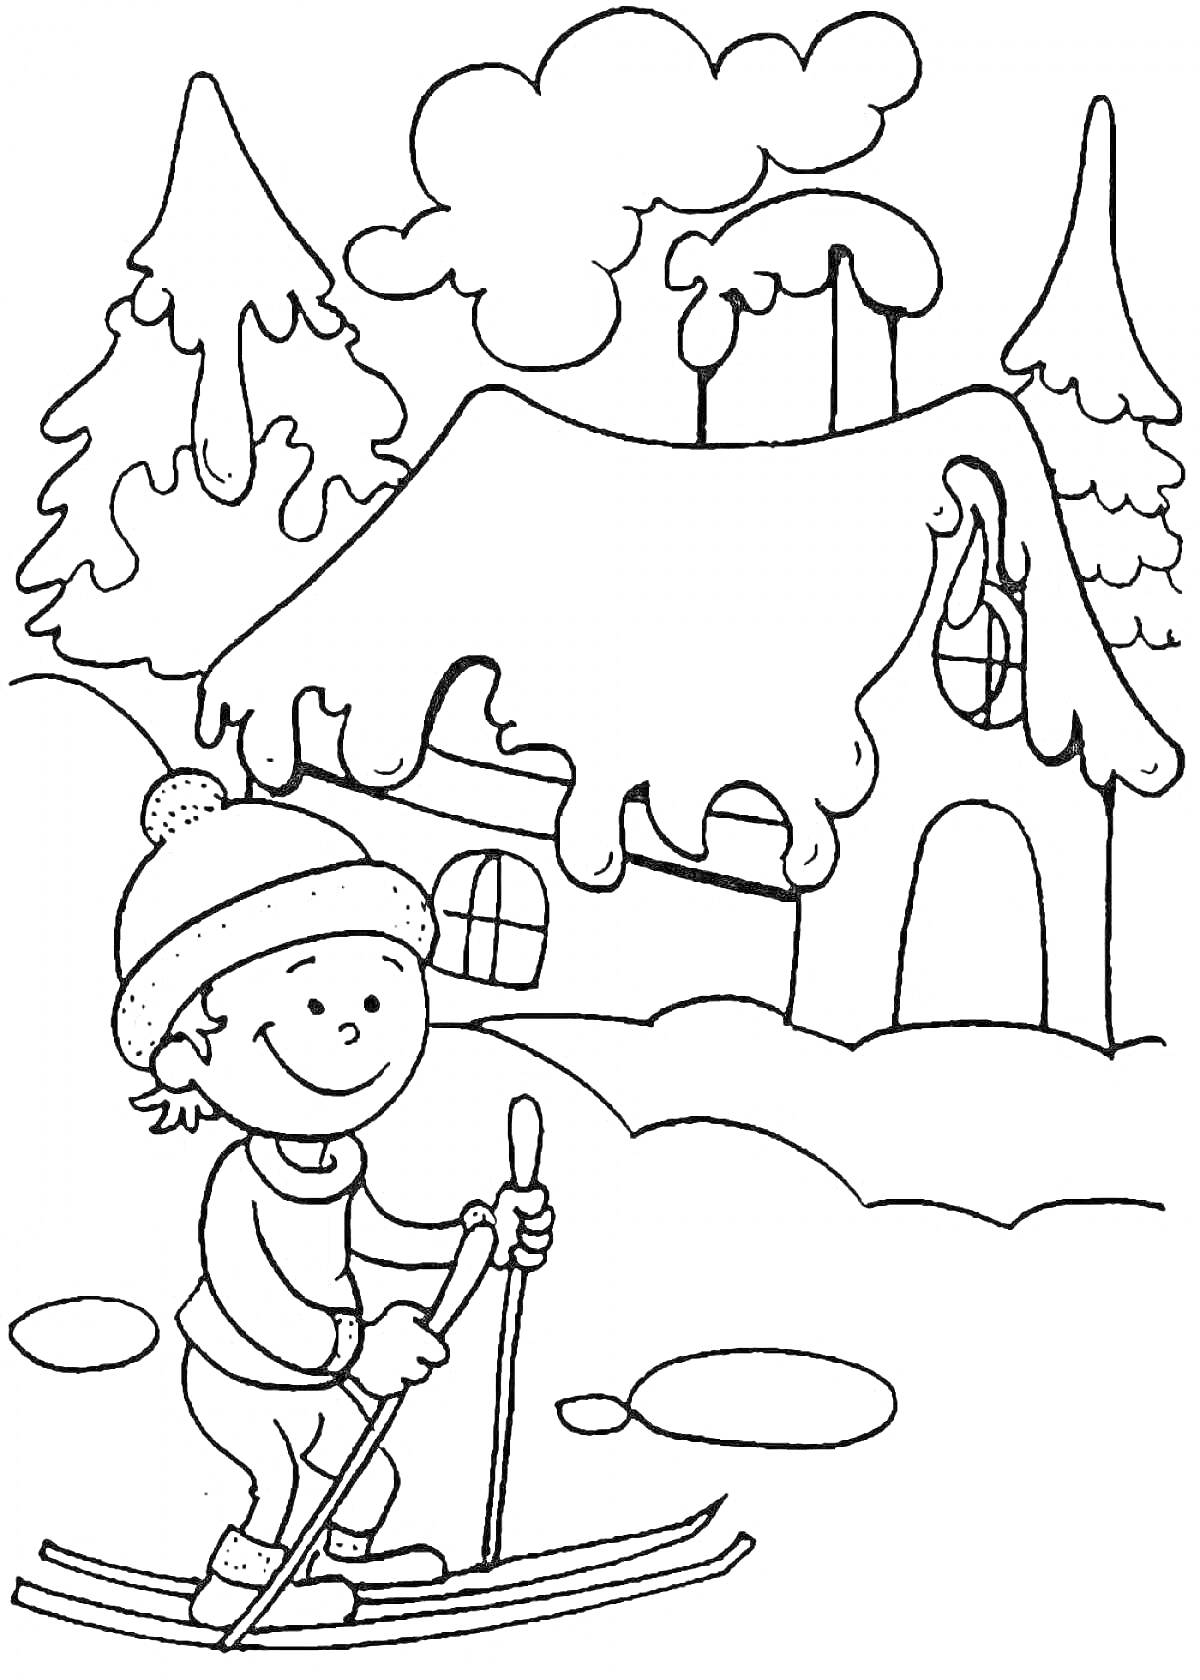 Раскраска Ребёнок на лыжах перед домом зимой. На картинке изображены ребёнок на лыжах, дом с окнами и трубами, снег на земле и деревья, покрытые снегом.